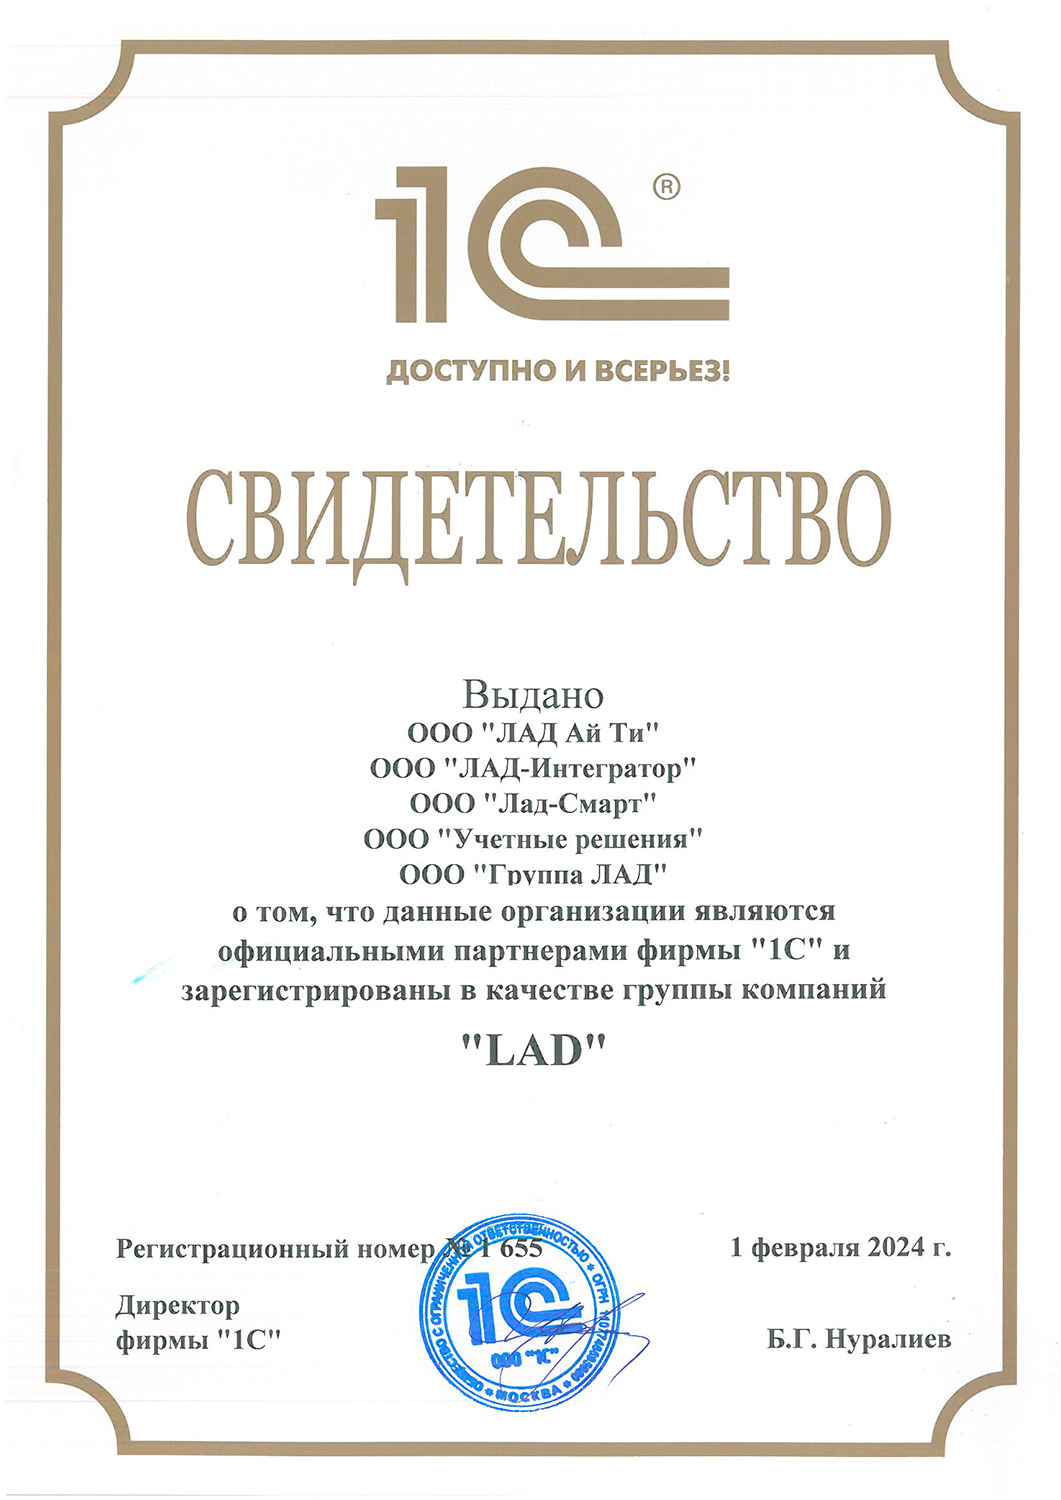 Сертификат компании Лад - Официальные партнеры фирмы «1С»